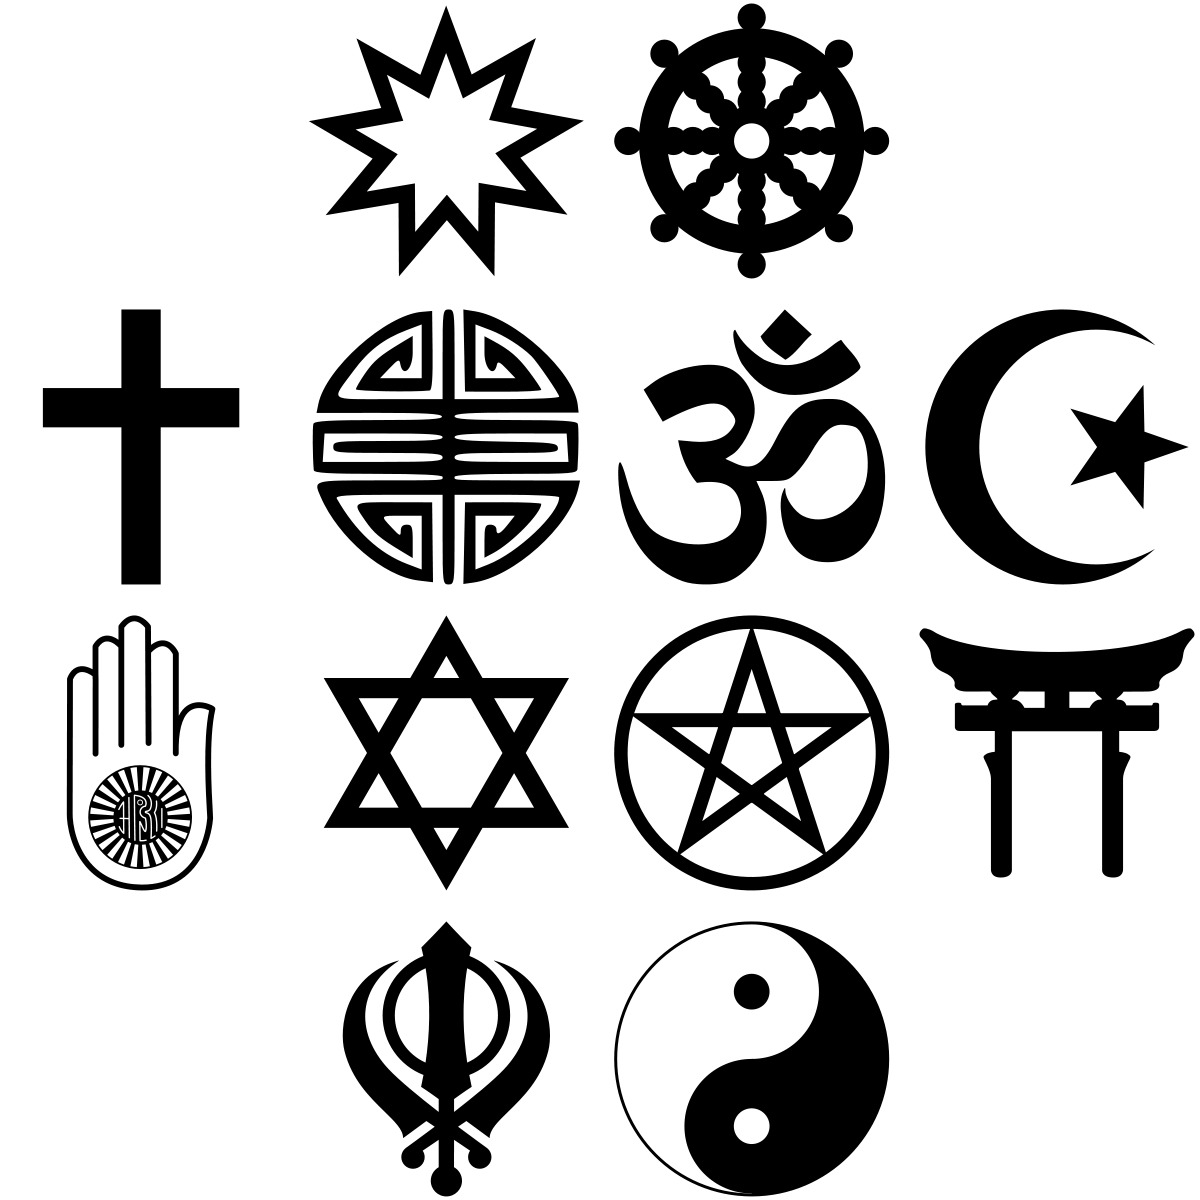 Symbols from twelve world religious movements